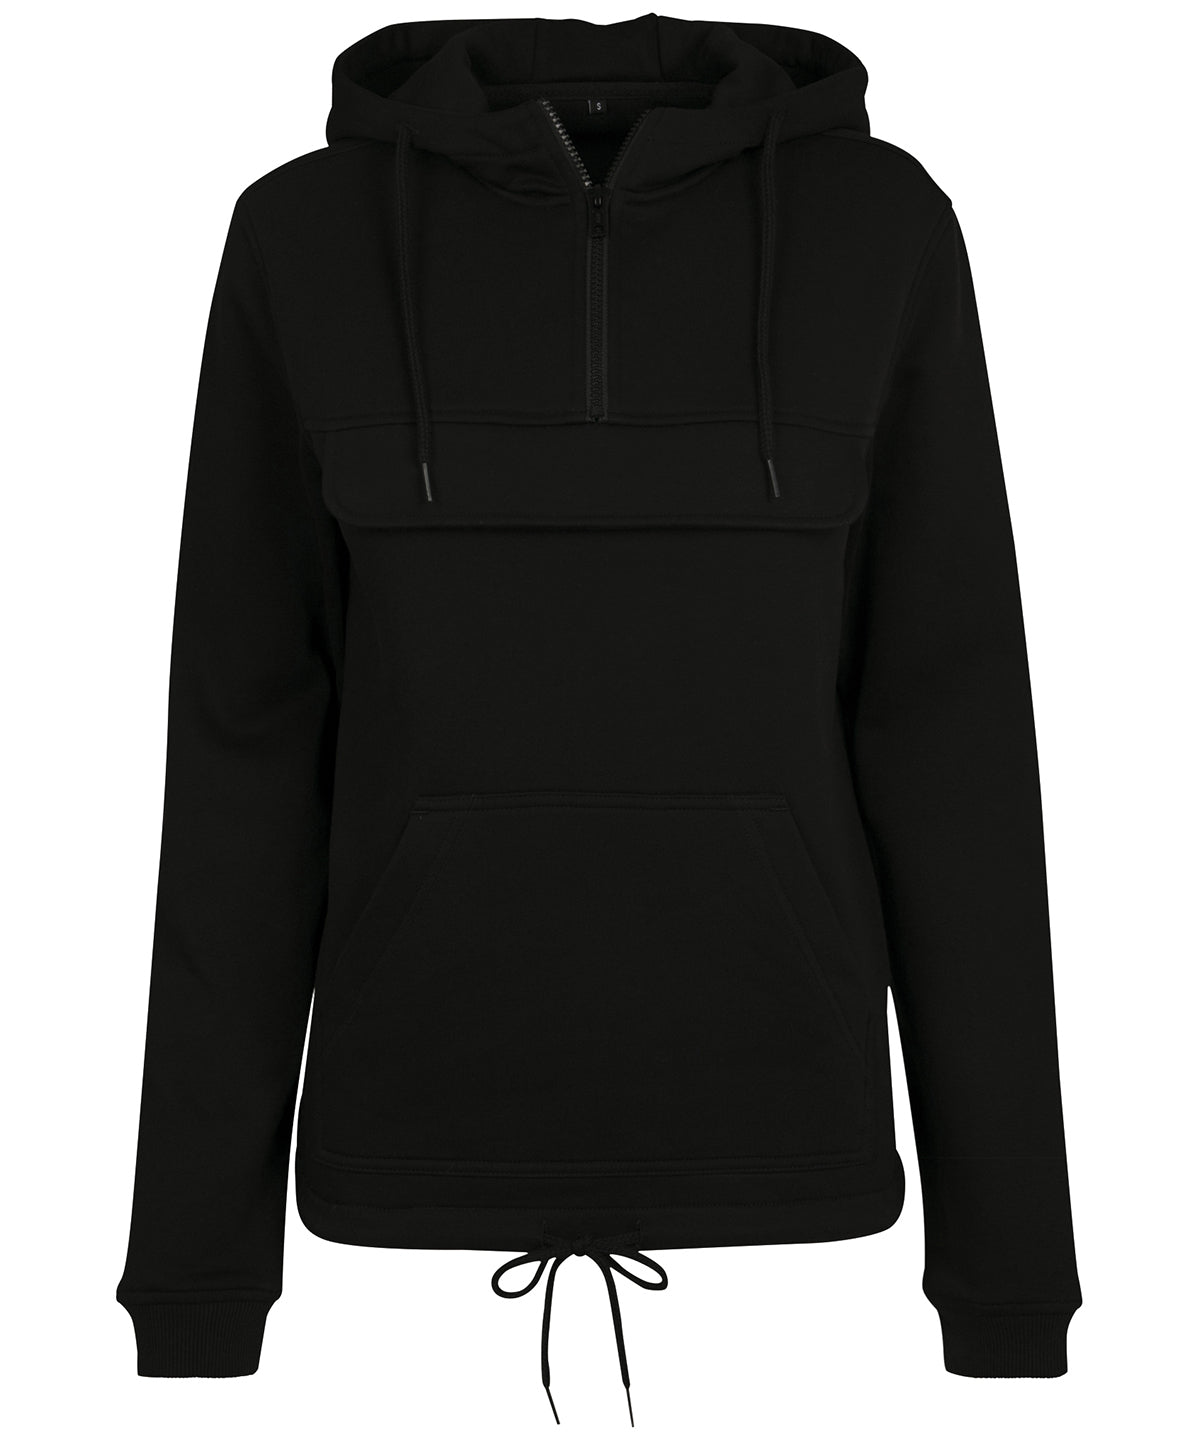 Personalised Hoodies - Black Build Your Brand Women's sweat pullover hoodie